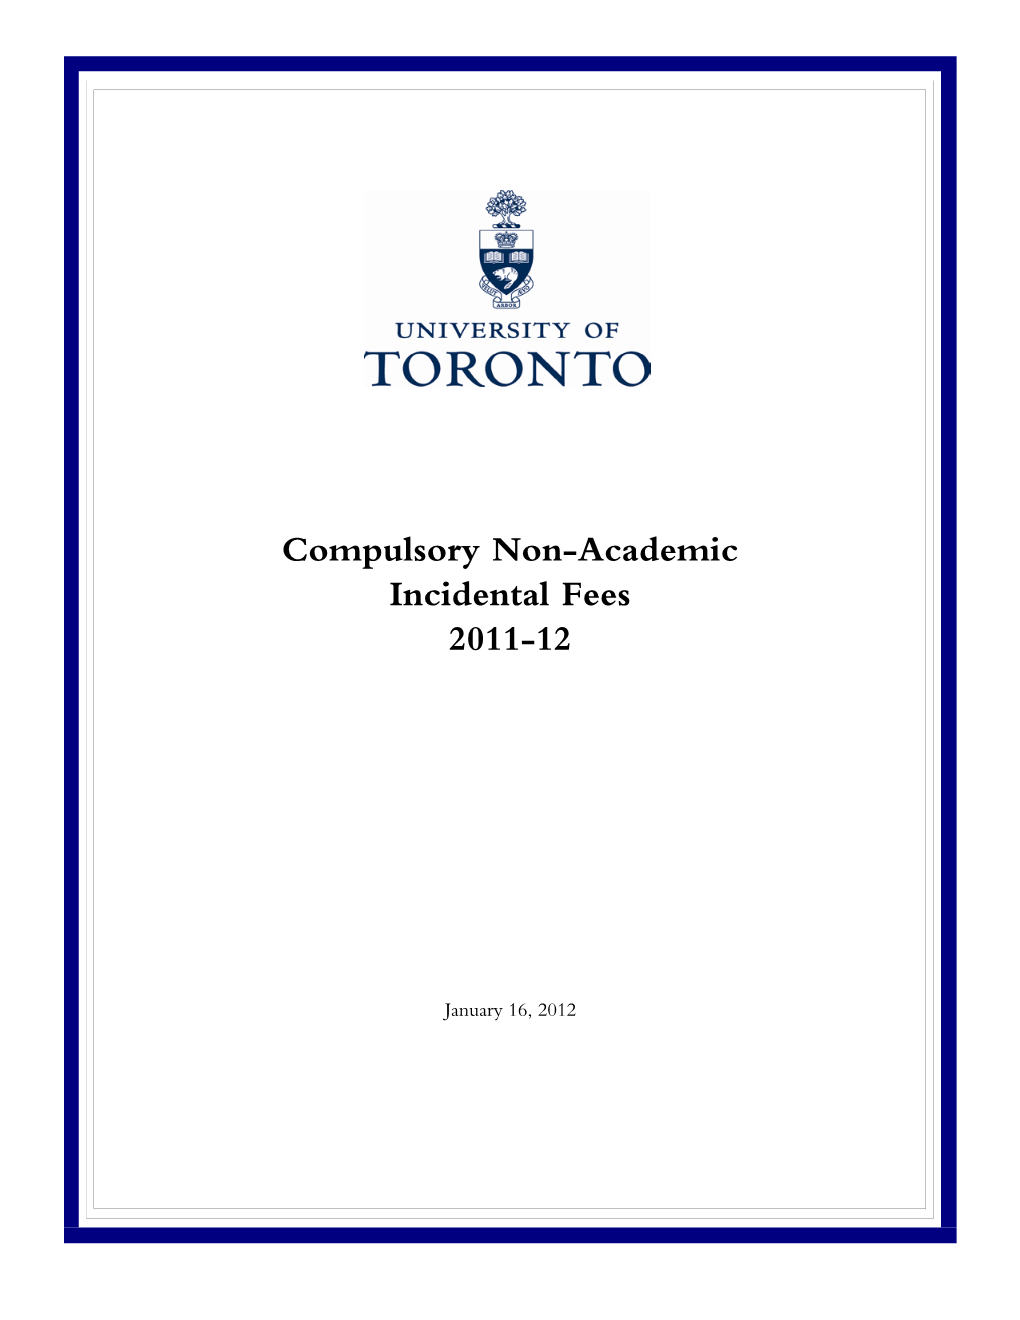 Compulsory Non-Academic Incidental Fees 2011-12